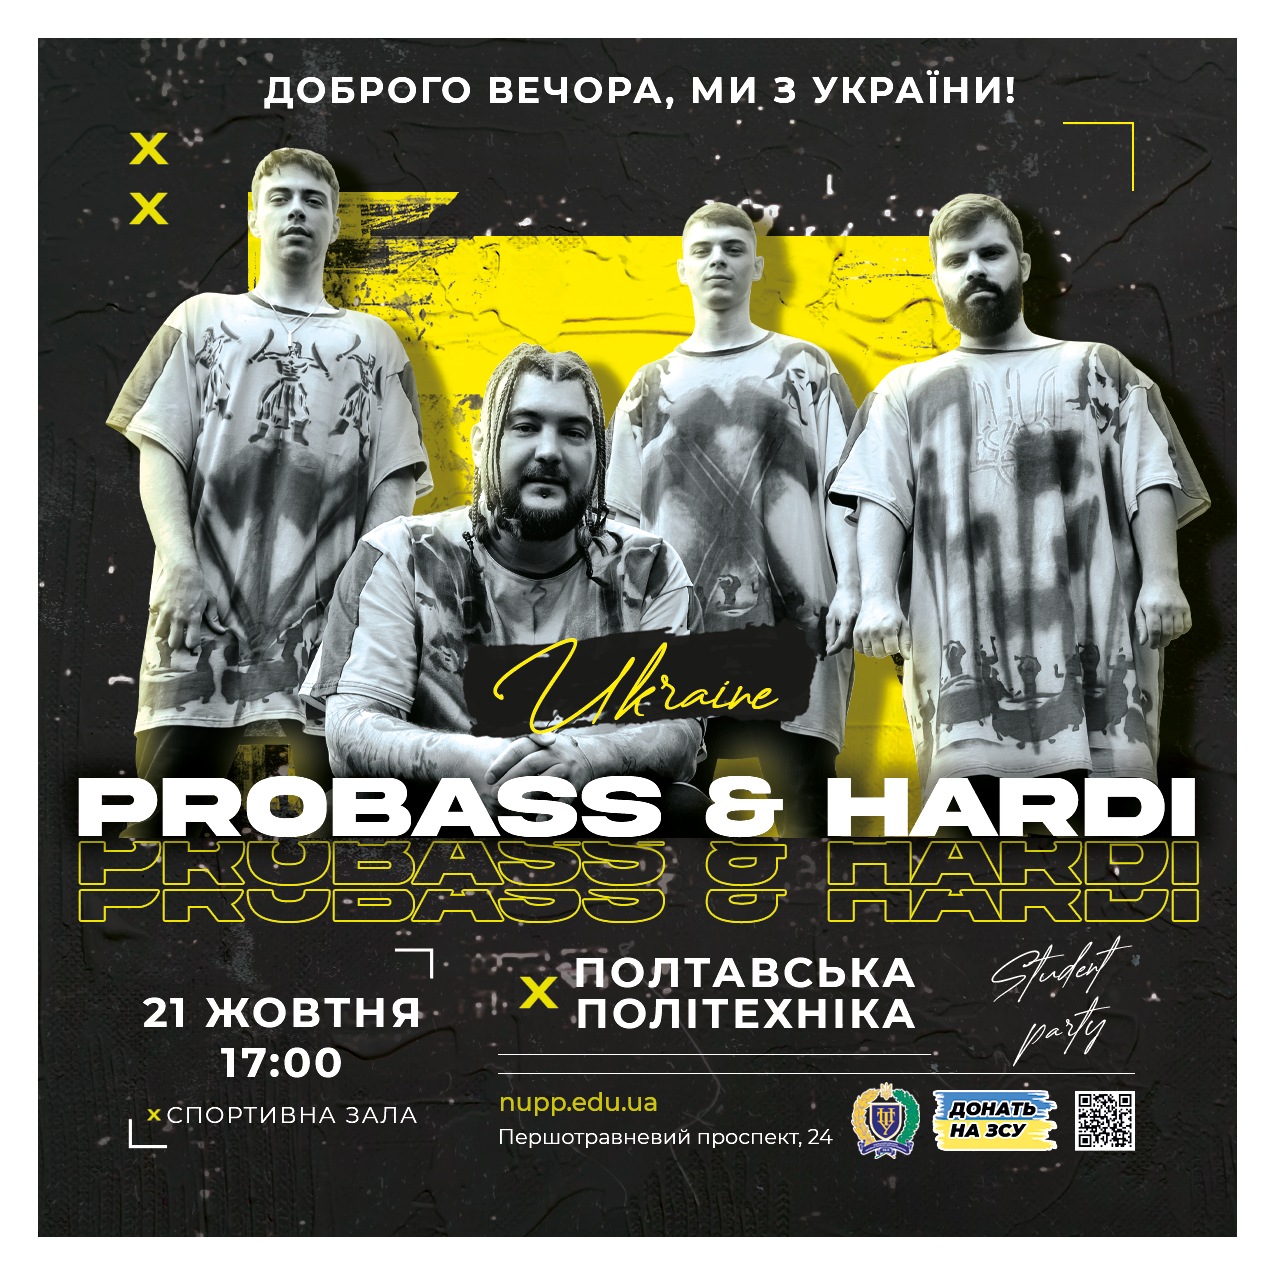 «Доброго вечора, ми з України!»: політехніка запрошує на благодійну студентську вечірку з ProBASS & Hardi